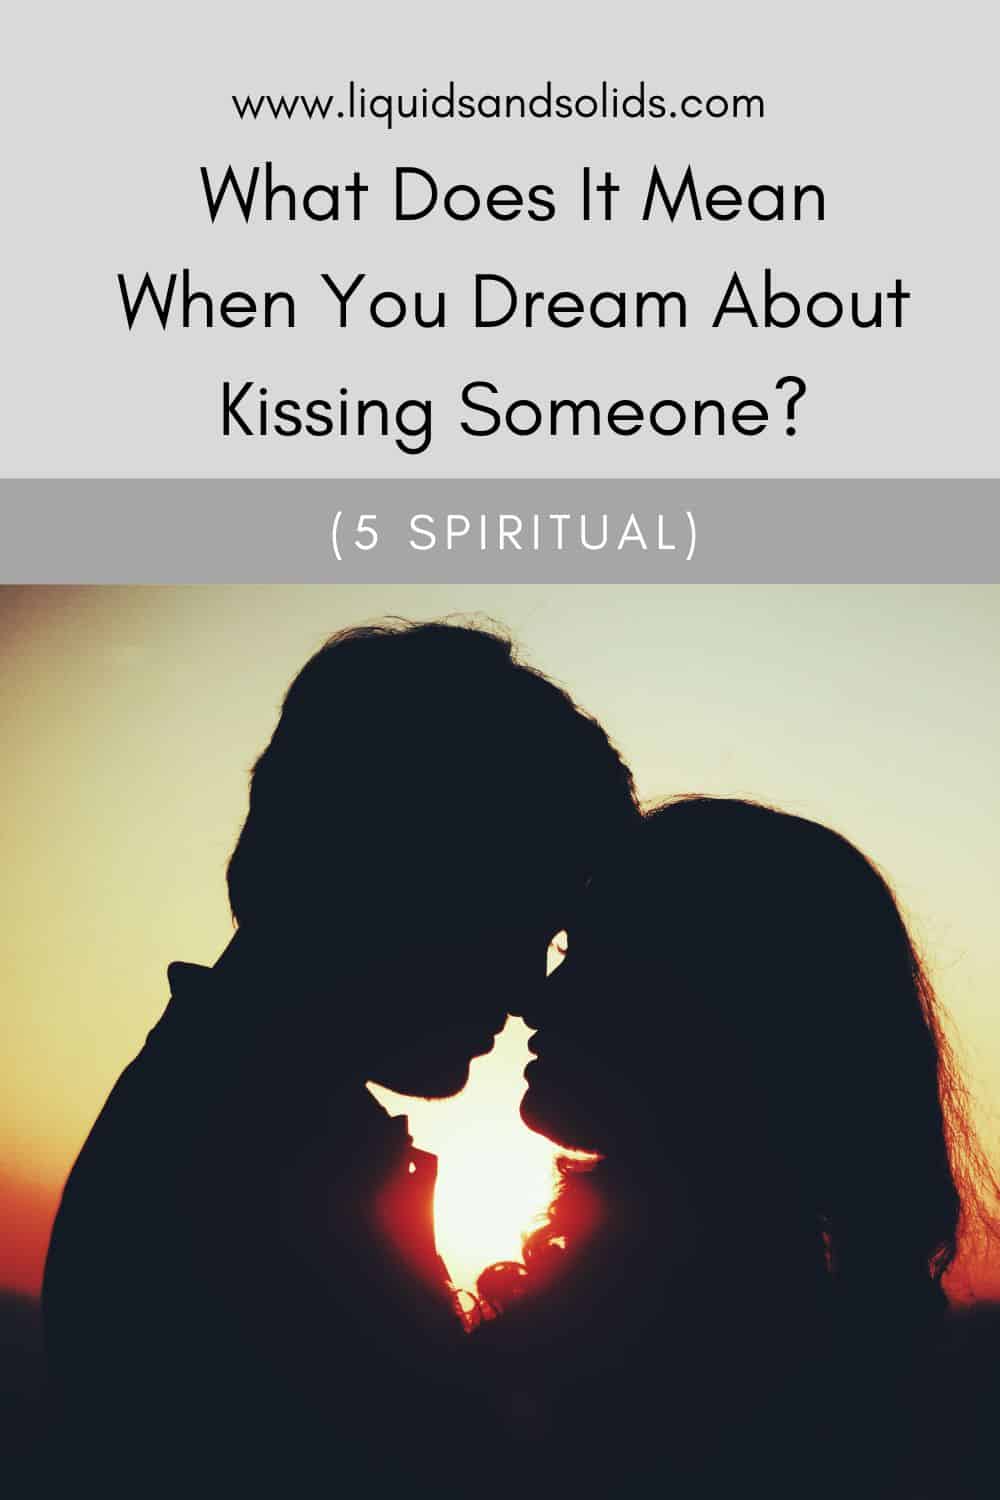  Hvad betyder det, når du drømmer om at kysse nogen? (5 spirituelle betydninger)